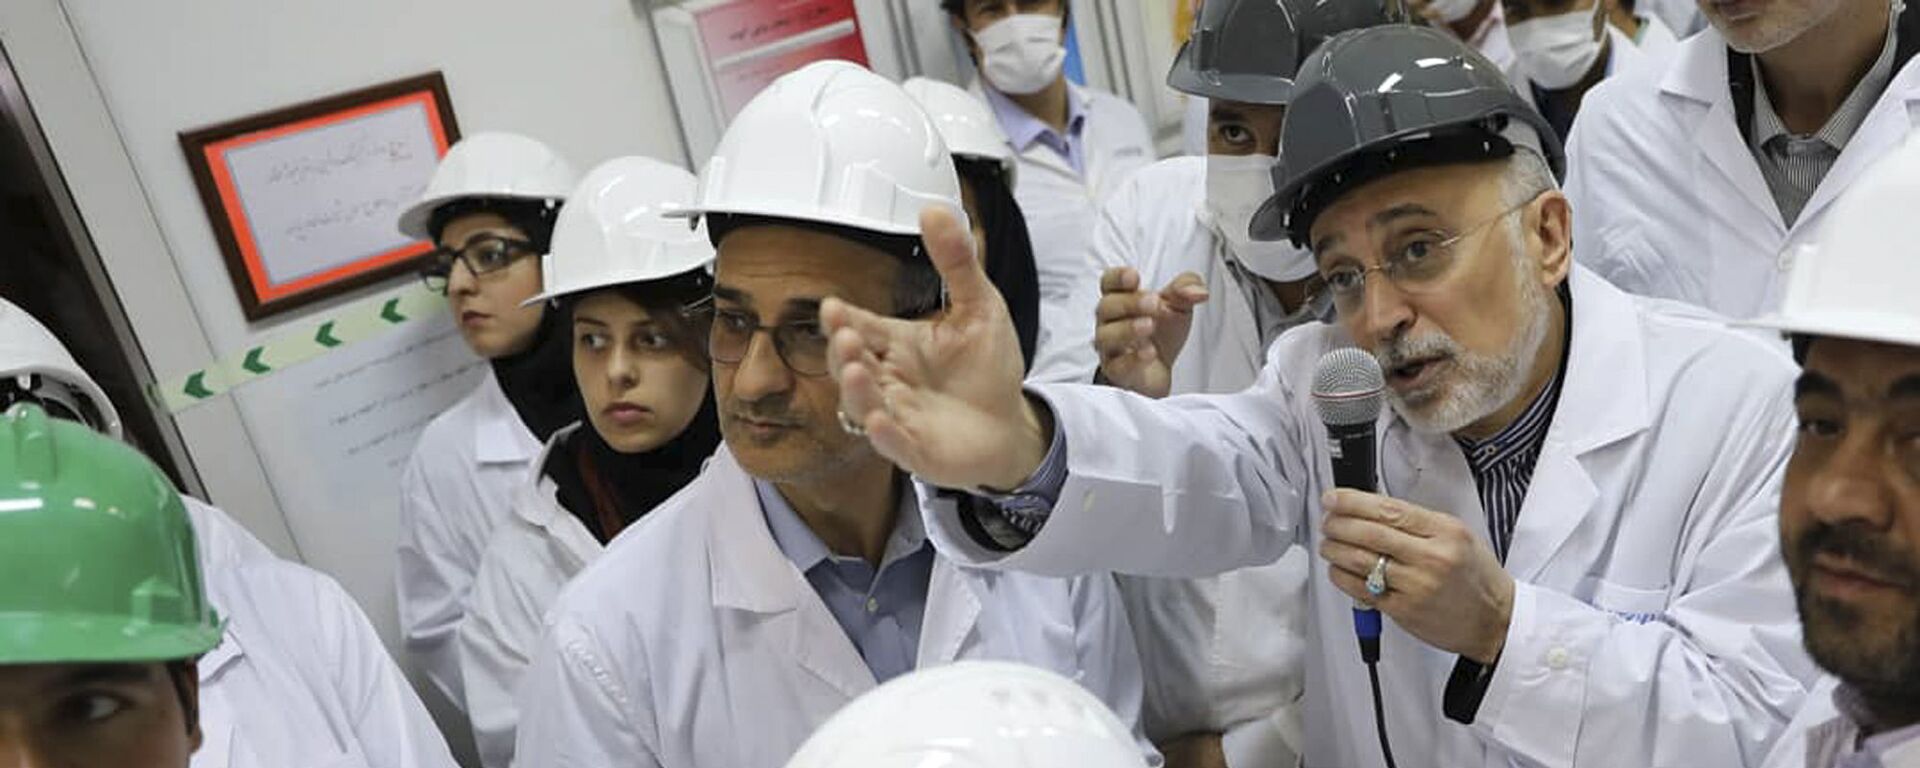 علي أكبر صالحي رئيس منظمة الطاقة النووية الإيرانية يتحدث مع وسائل الإعلام أثناء زيارته لمرفق تخصيب نطنز وسط إيران - سبوتنيك عربي, 1920, 14.06.2021